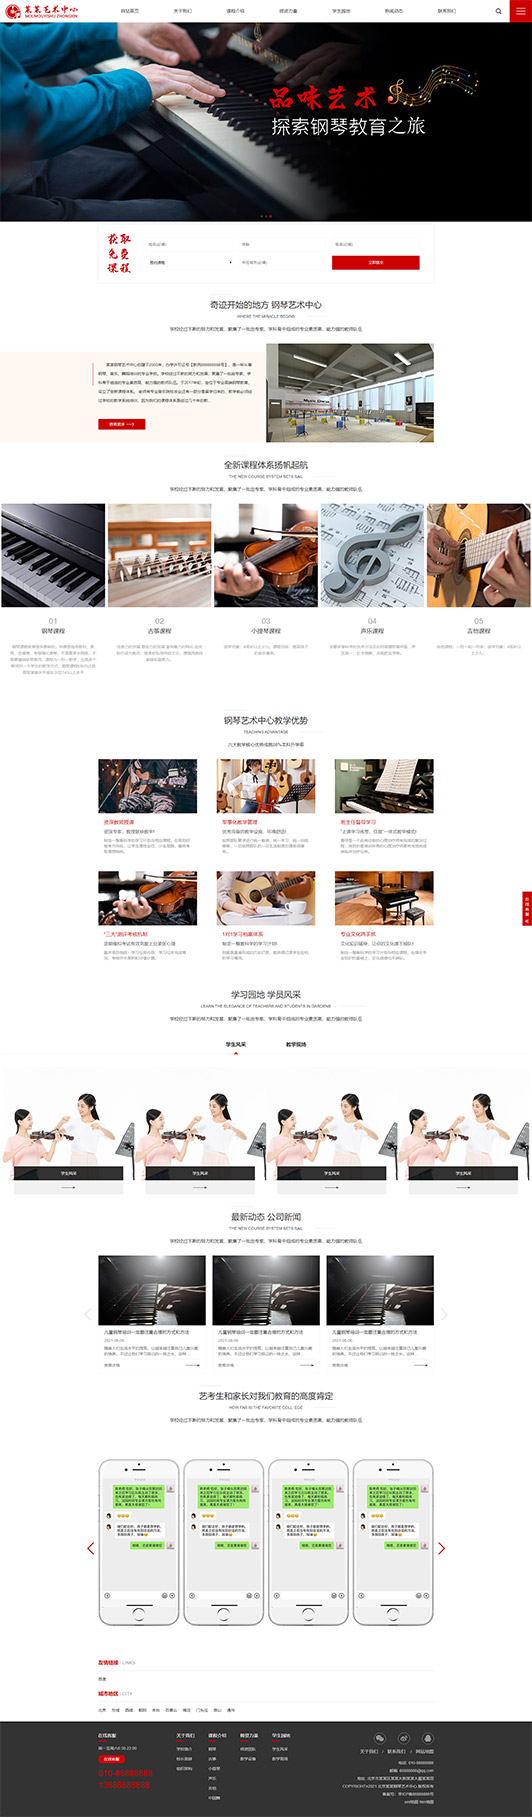 湖北钢琴艺术培训公司响应式企业网站